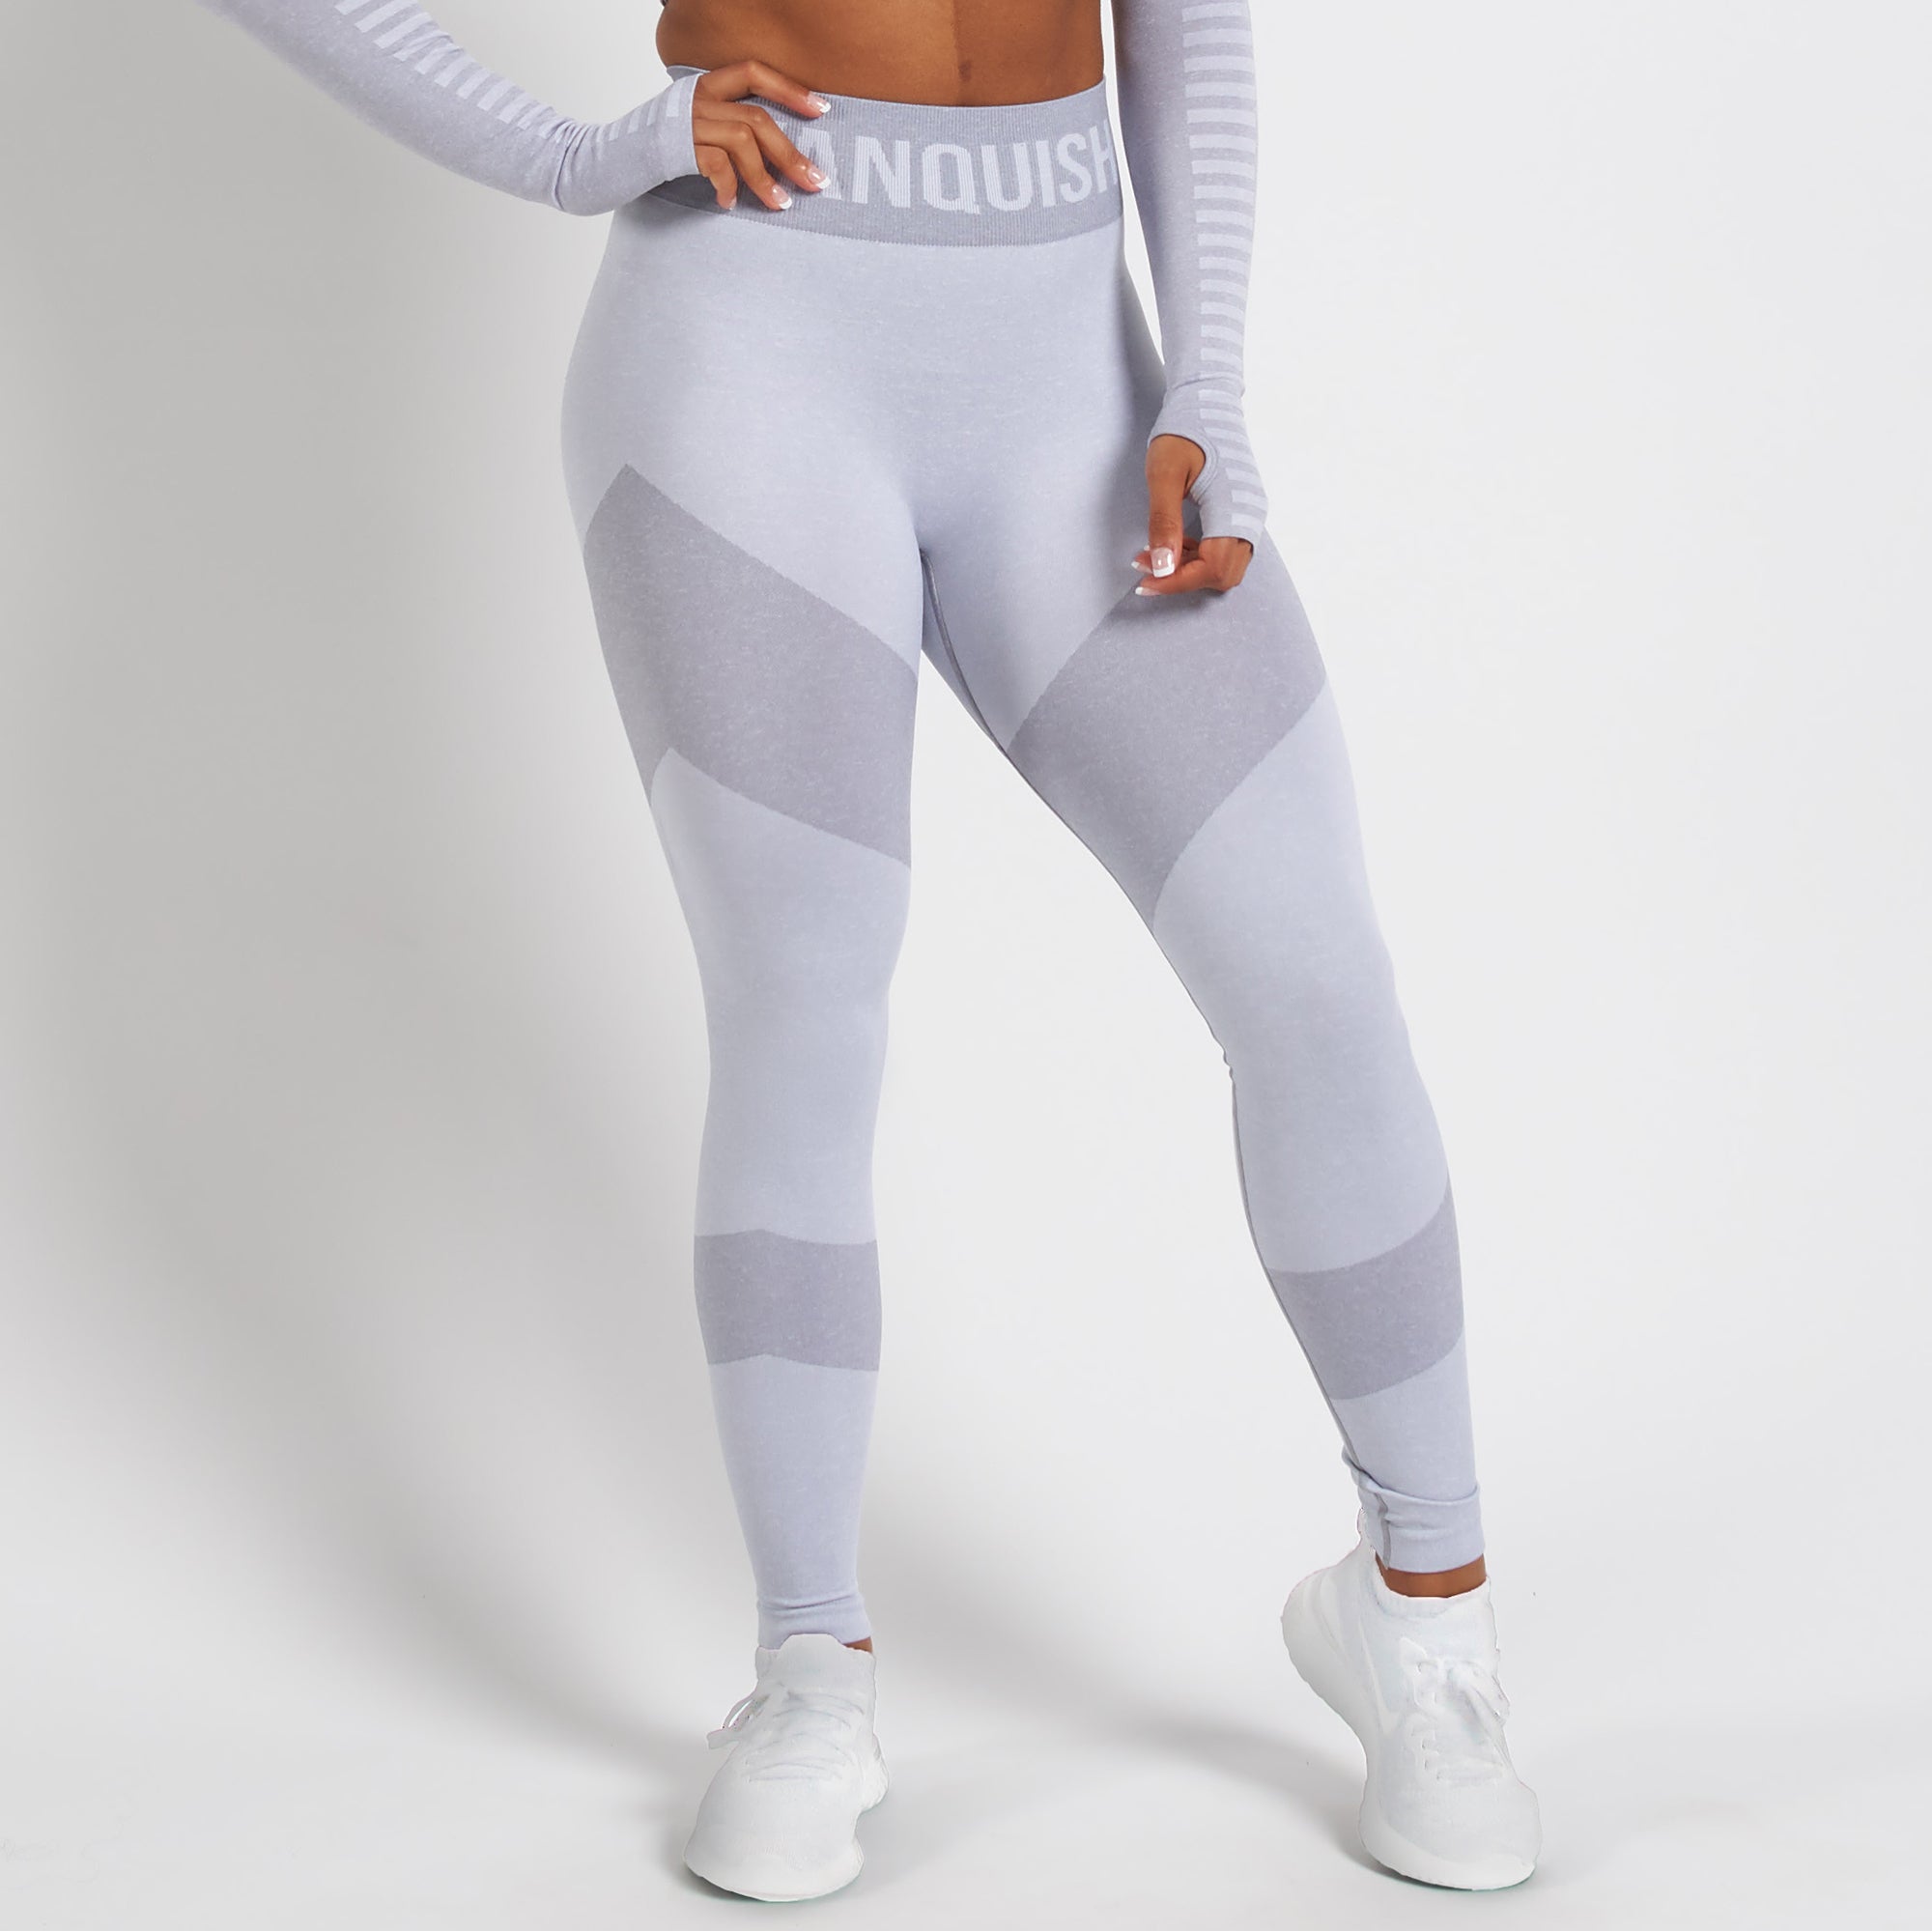 womens white leggings